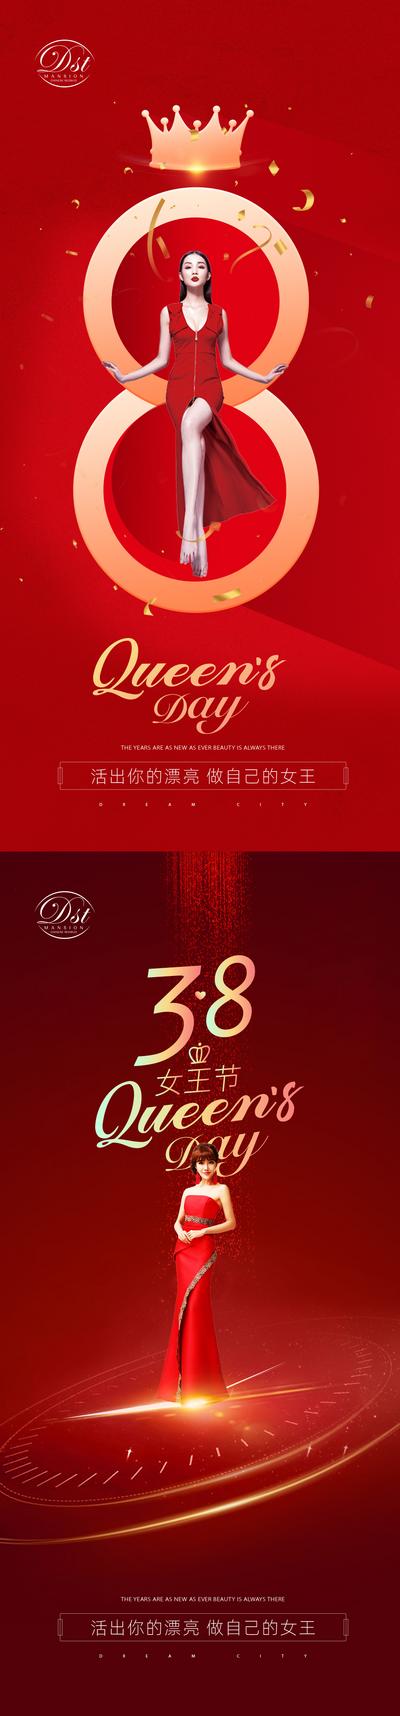 南门网 海报 公历节日 妇女节 3.8 女神节 女王节 女神 皇冠 喜庆 系列